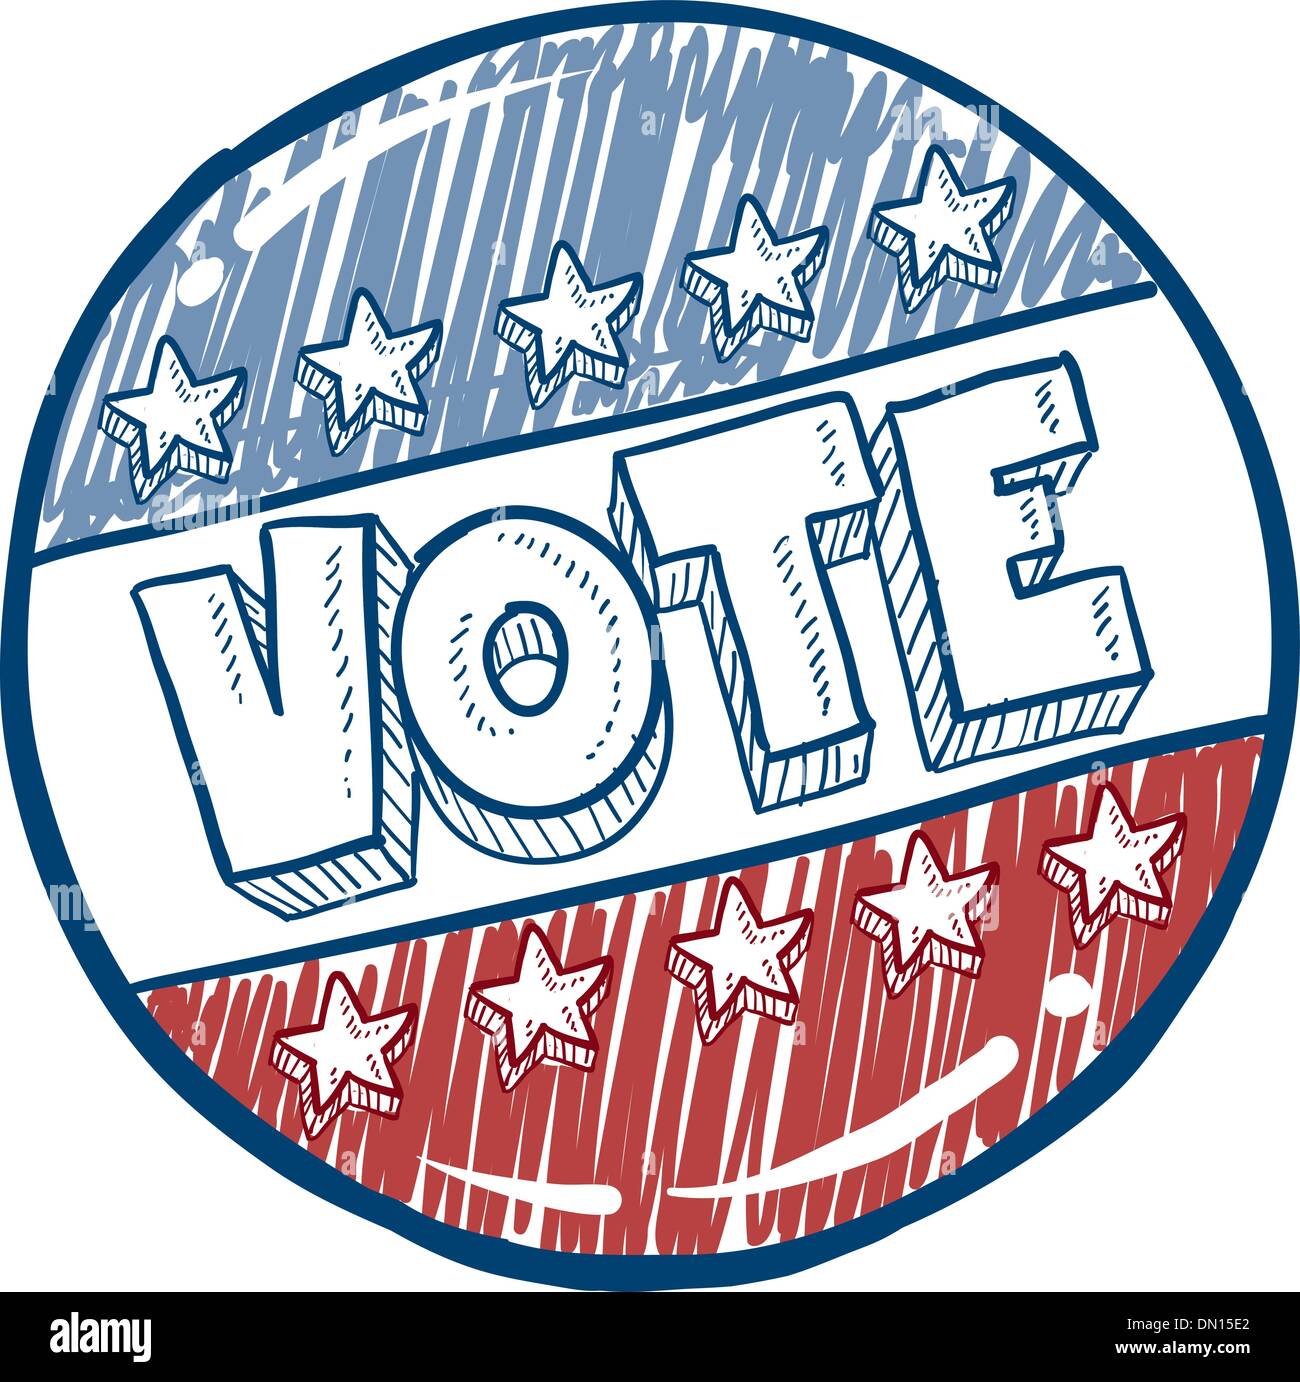 Vote campaign button sketch Stock Vector